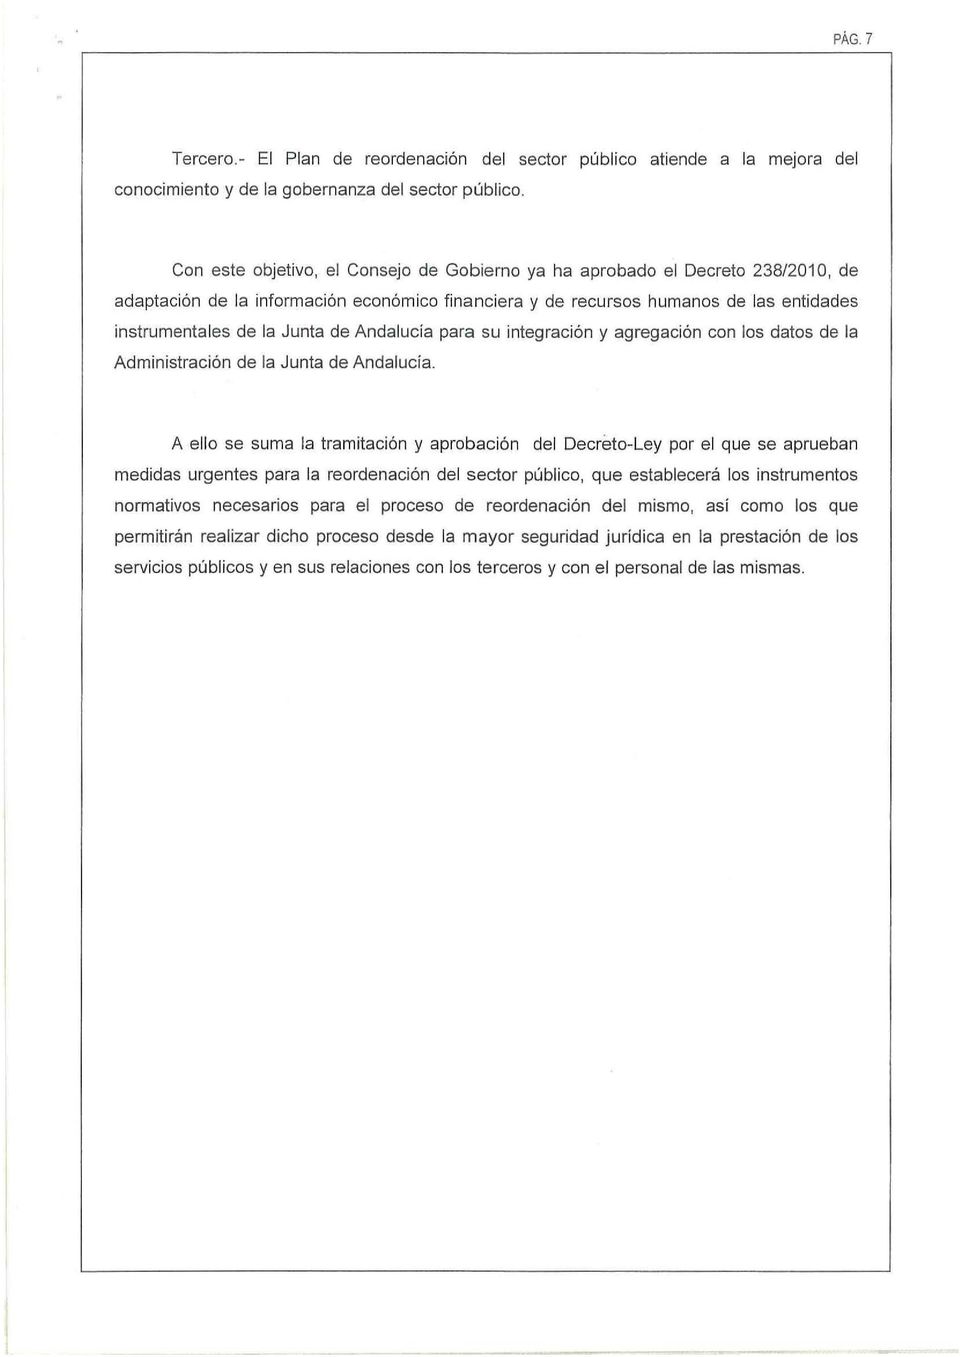 Andalucia para su integración y agregación con los datos de la Administración de la Junta de Andalucia.